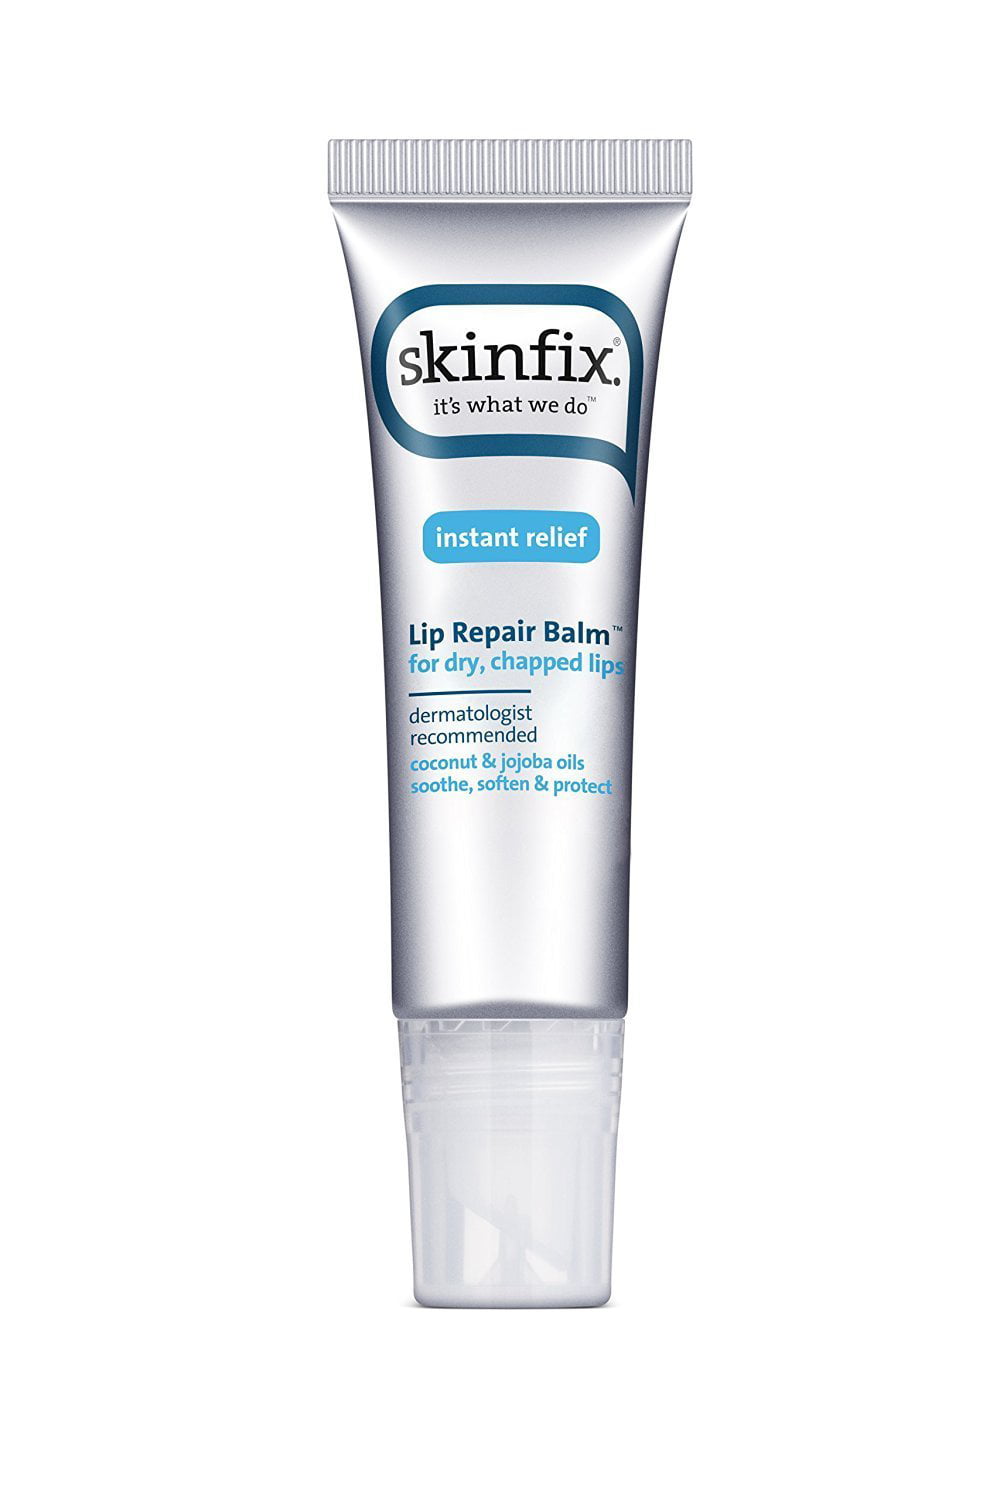 Skinfix - Lip Repair Balm, including Dermatologist natural  